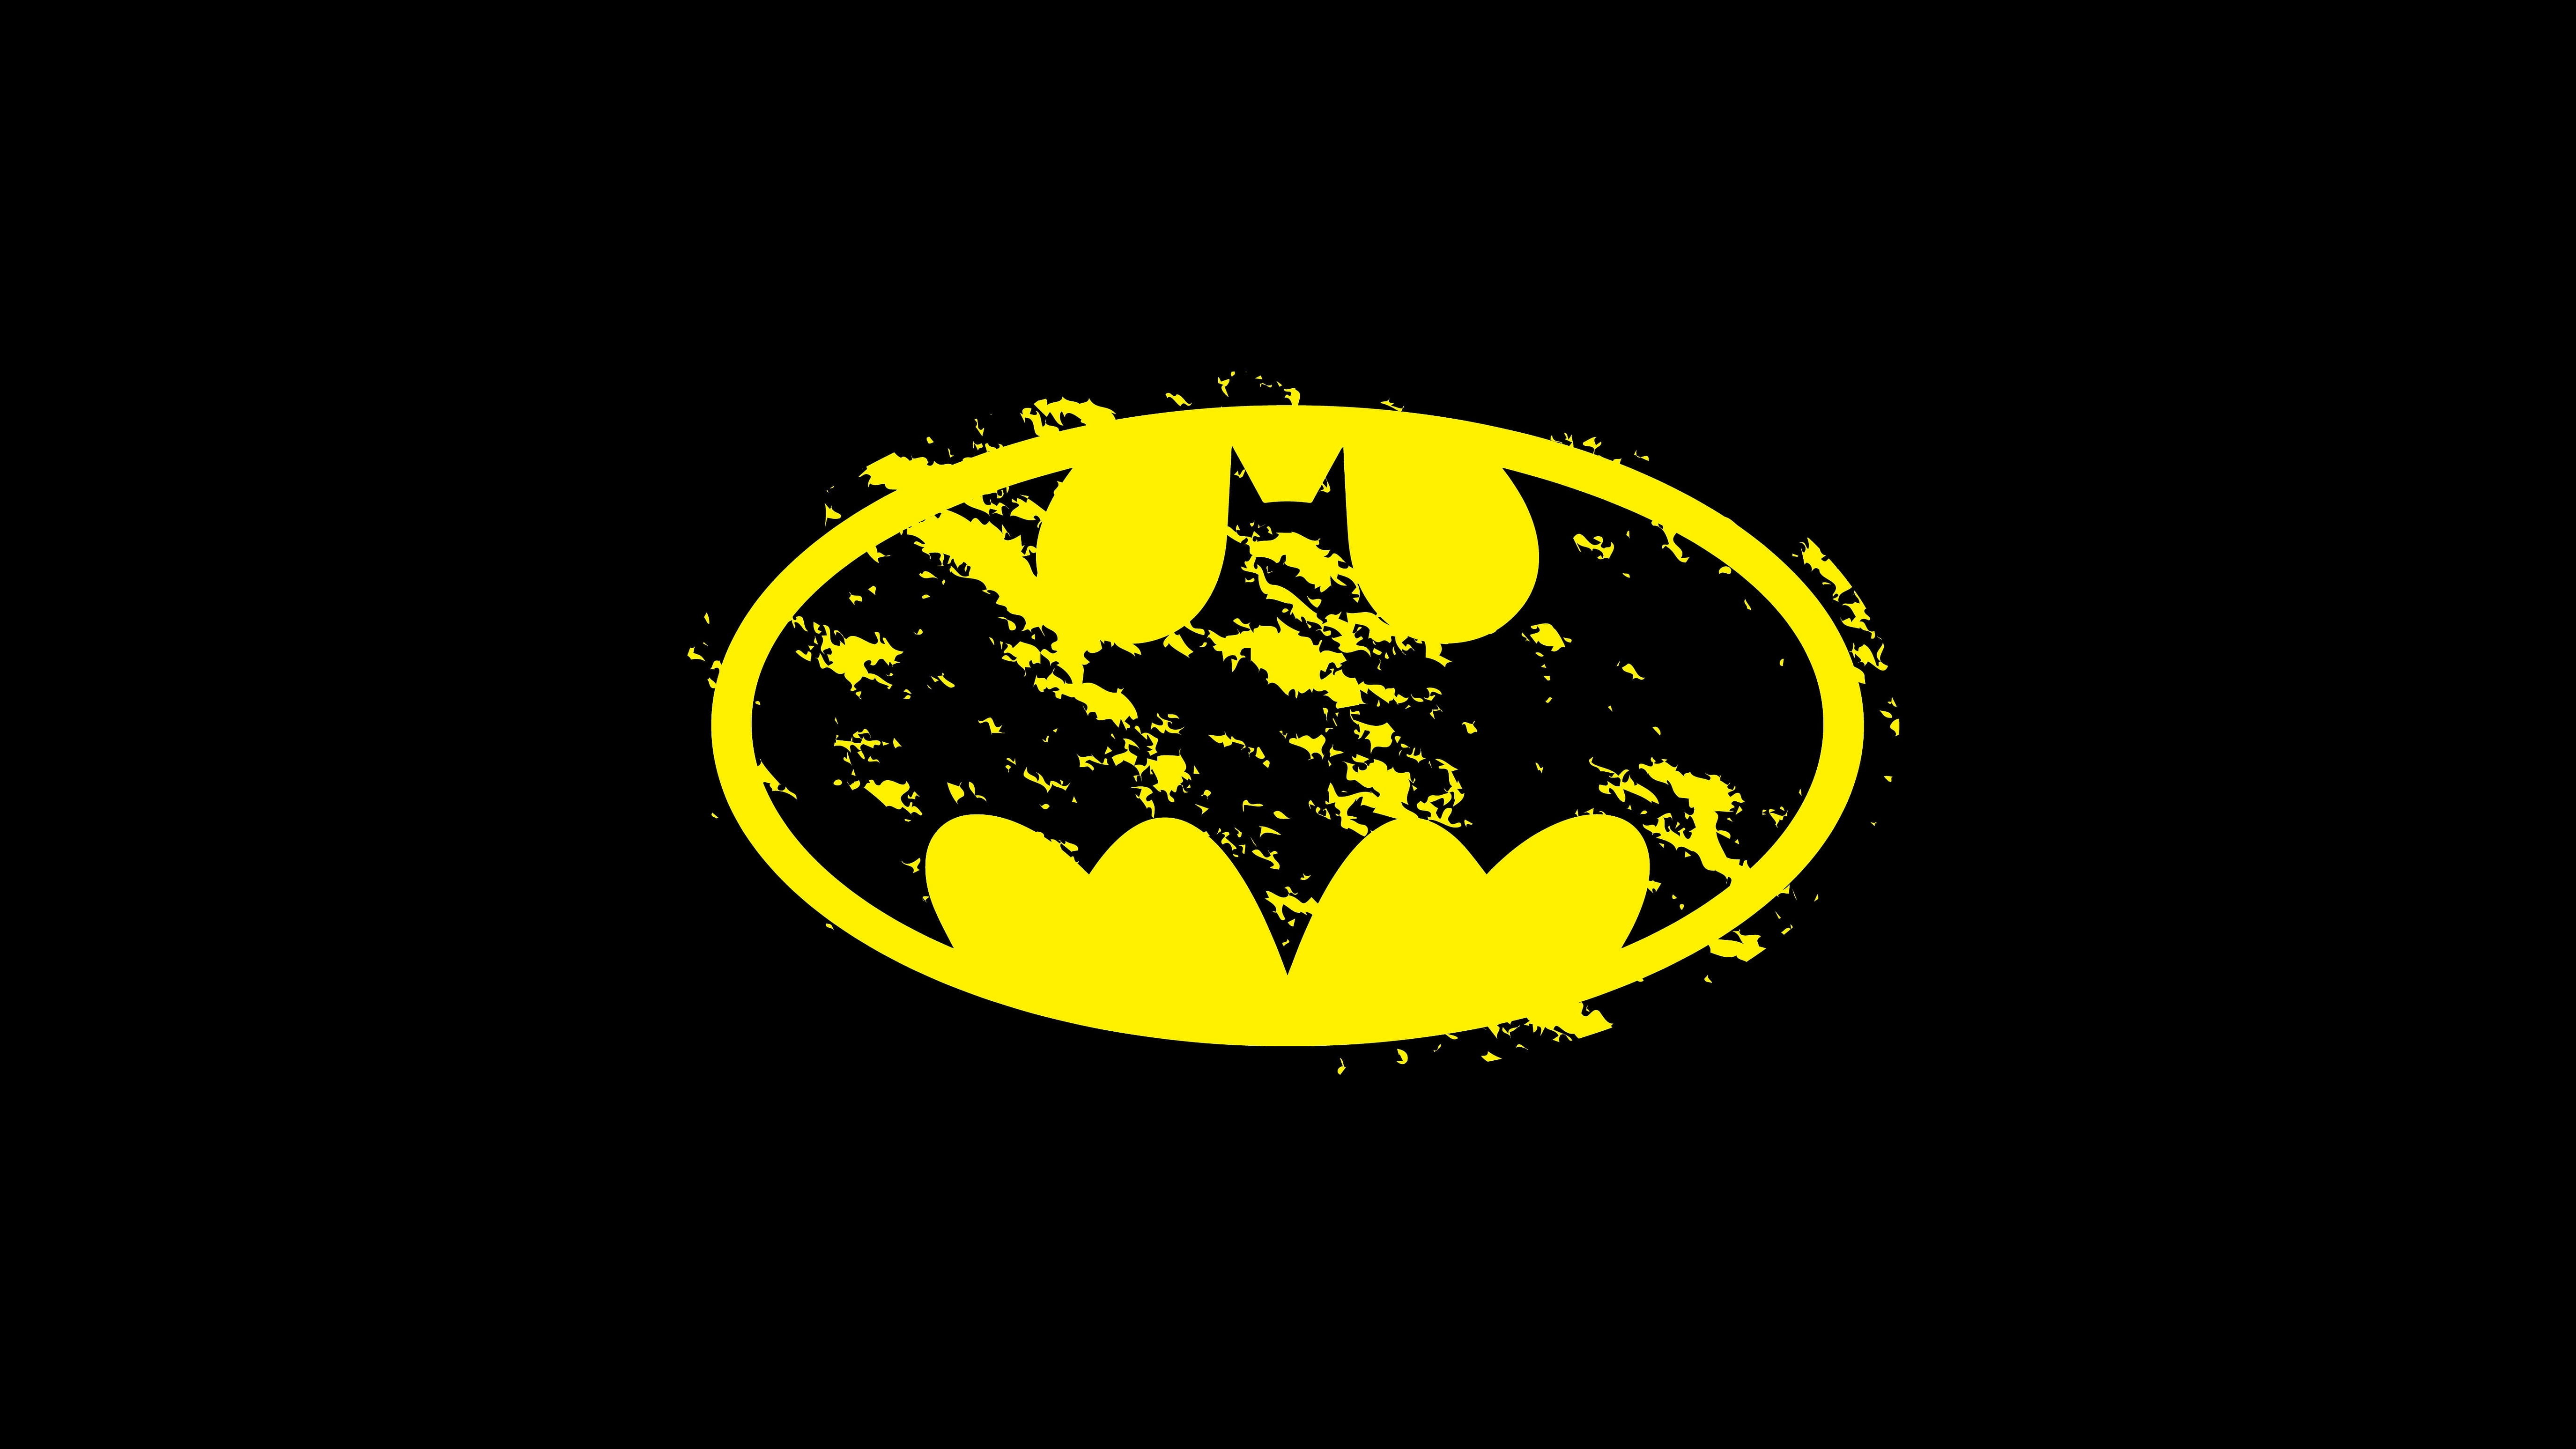 DC Comics Batman logo, background, vector, illustration, symbol